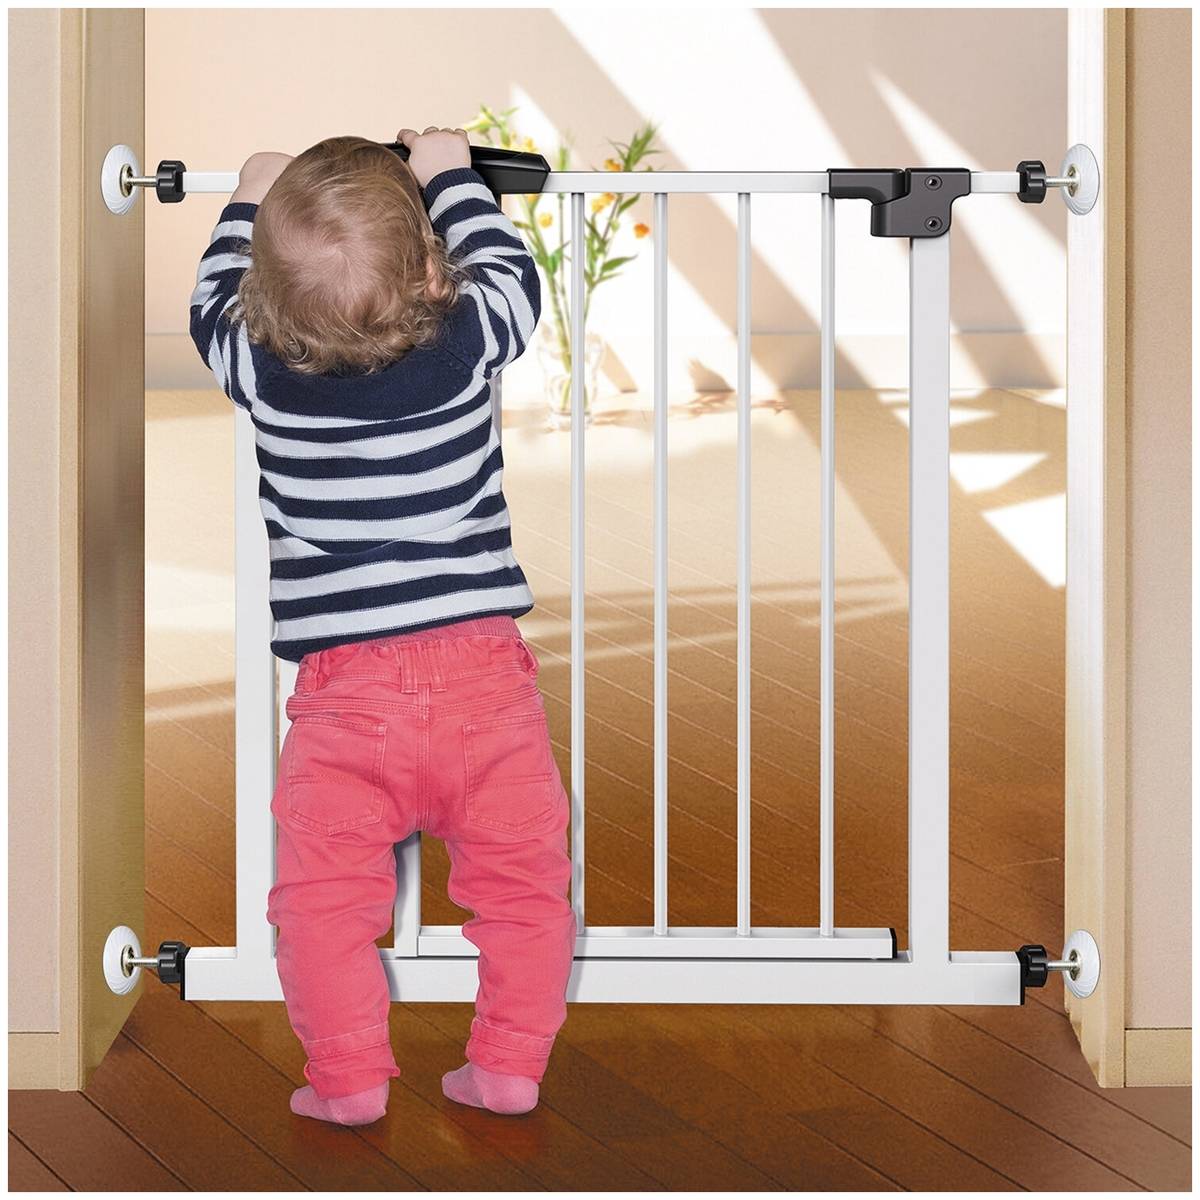 Детское ограждение для лестниц: конструкция для комфорта ребенка и родителей – советы по ремонту